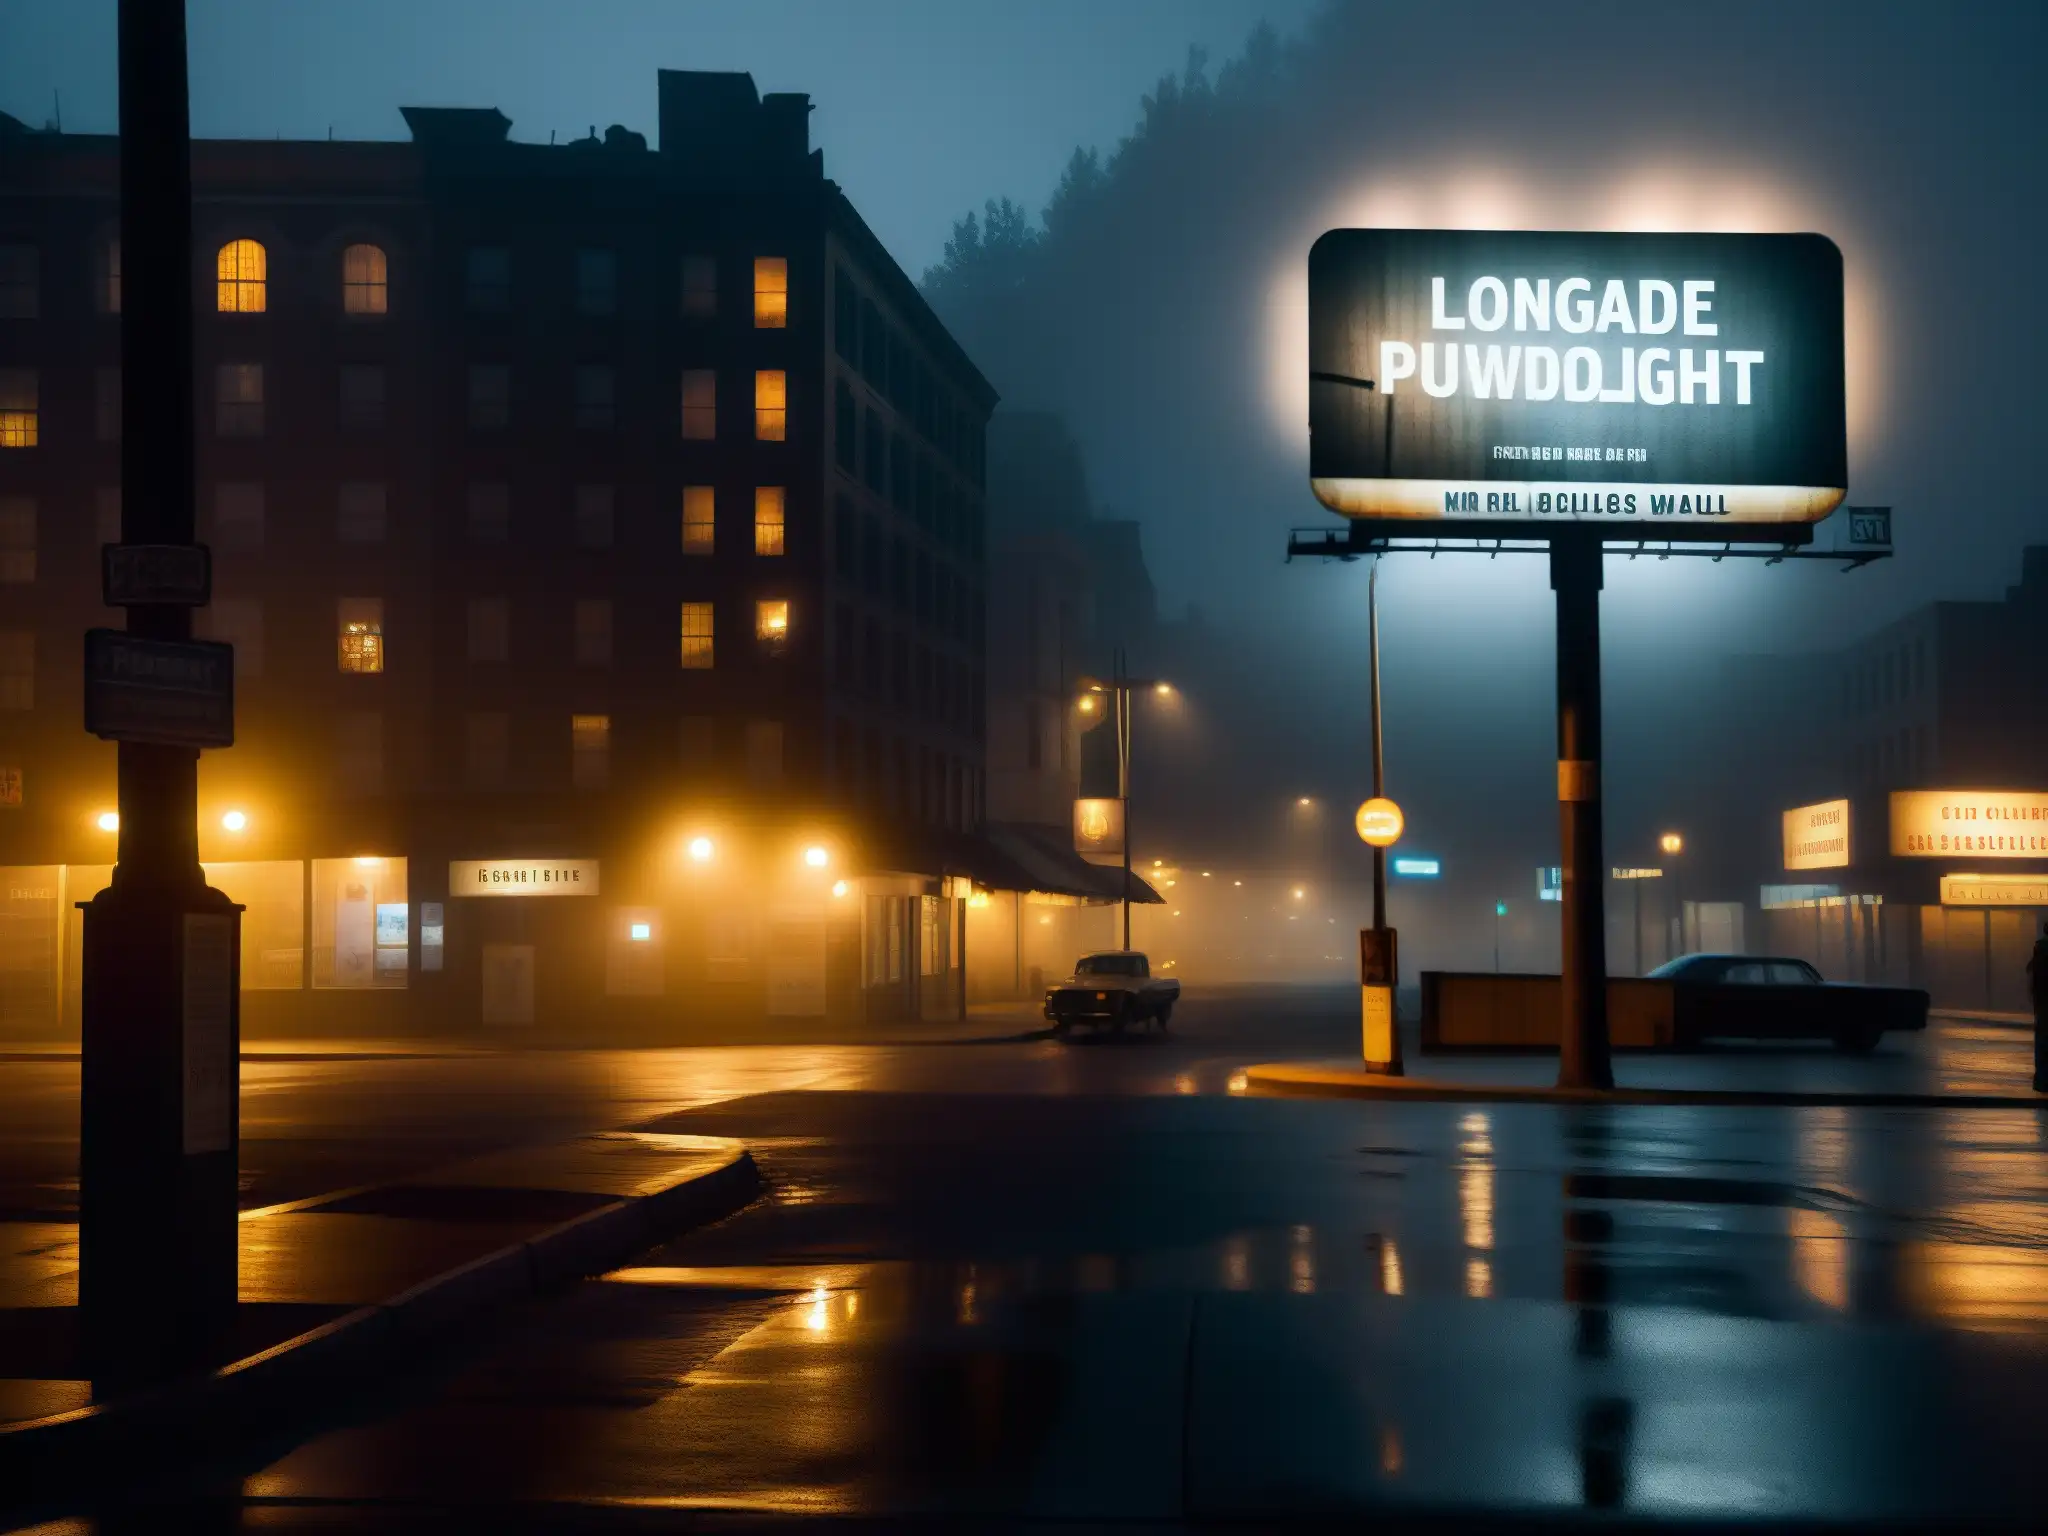 Una calle urbana oscura y desierta de noche, con un antiguo cartel publicitario en la distancia y una atmósfera misteriosa de leyendas urbanas